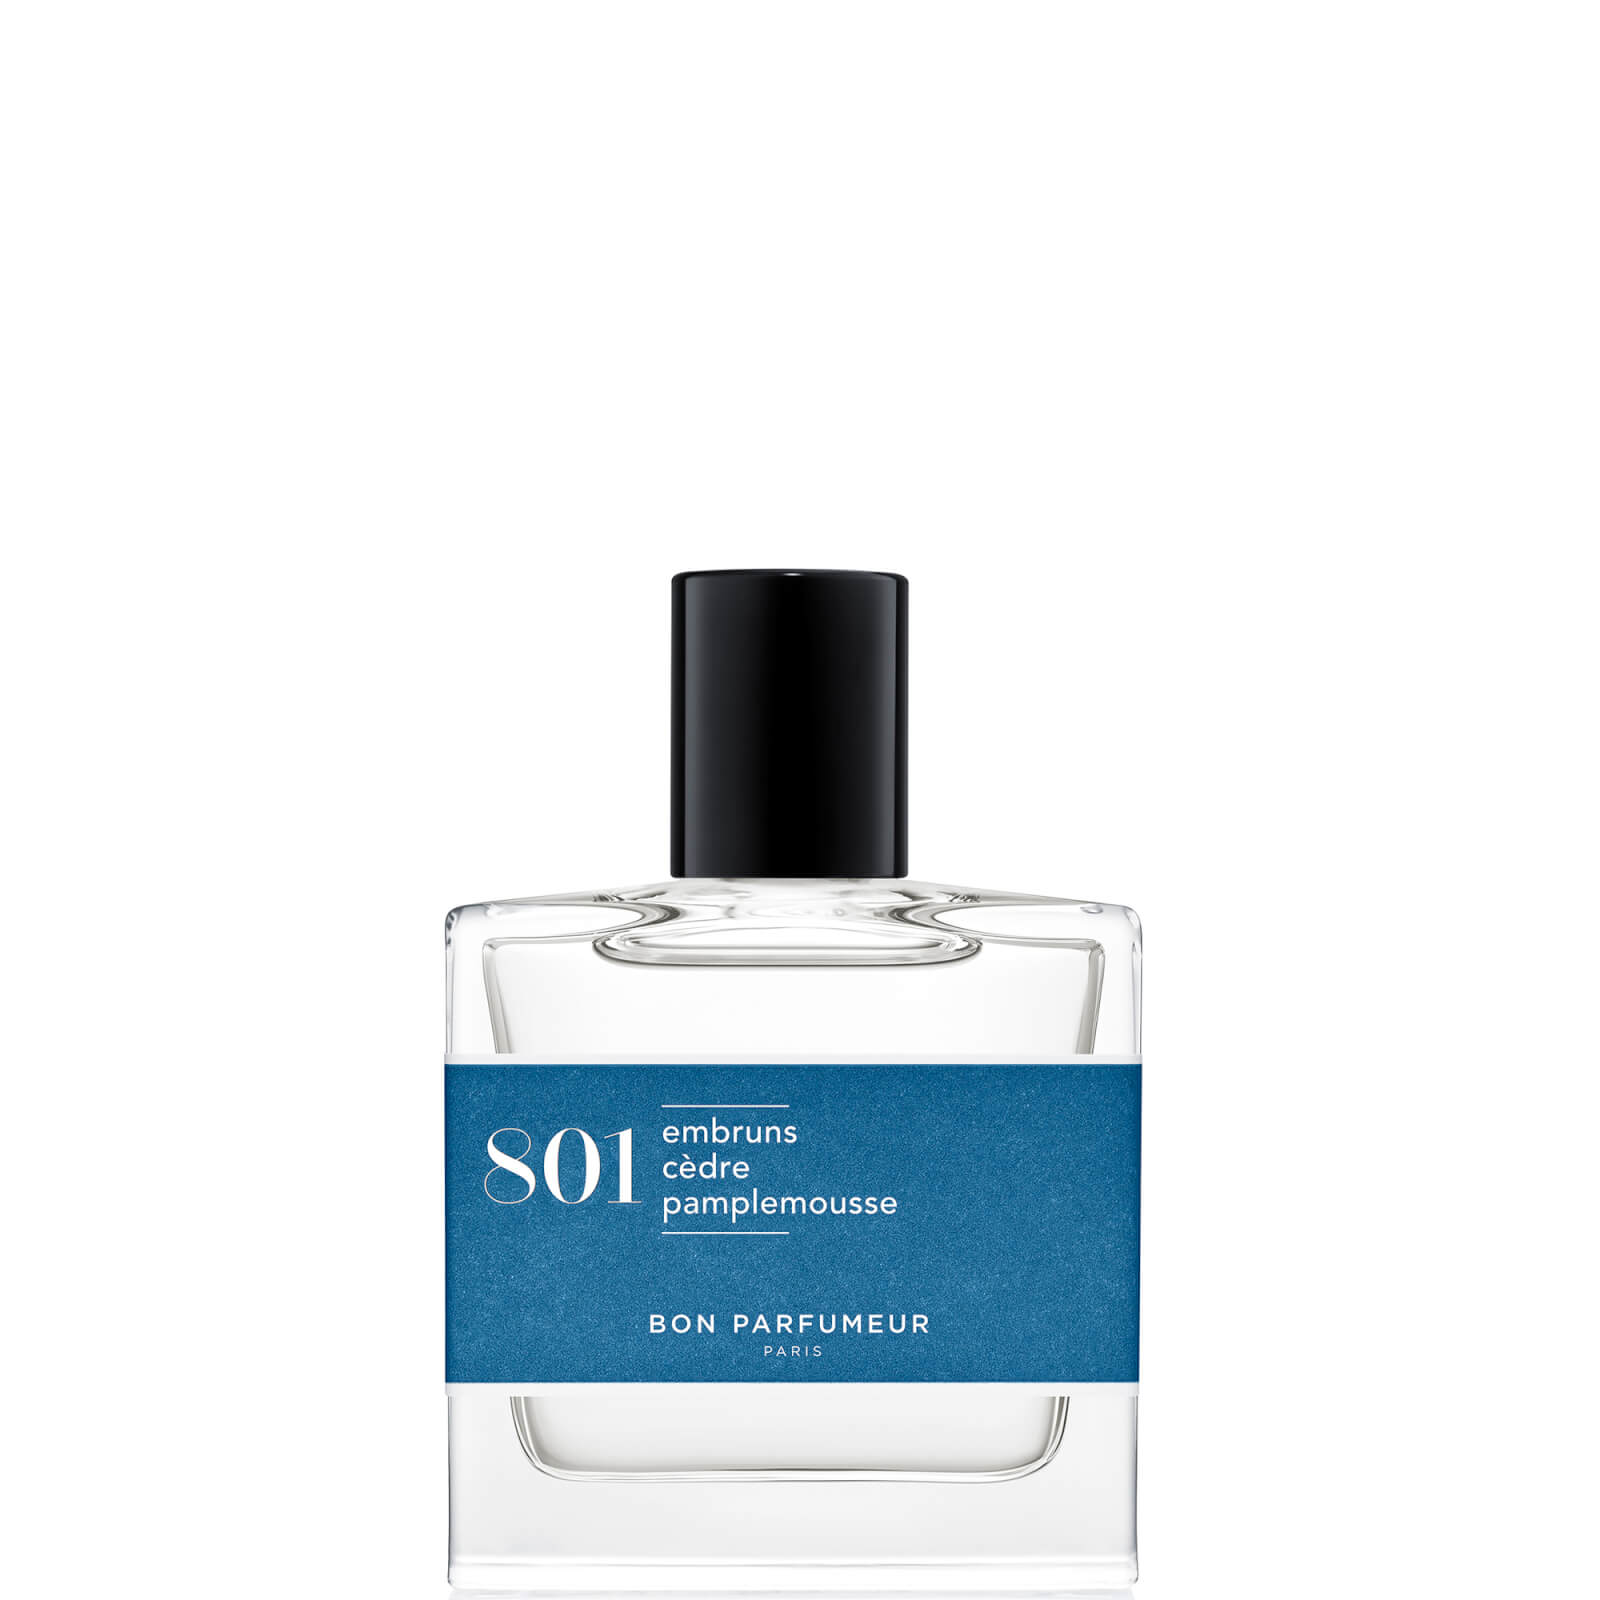 Image of Bon Parfumeur 801 Sea Spray Cedar Grapefruit Eau de Parfum - 30ml